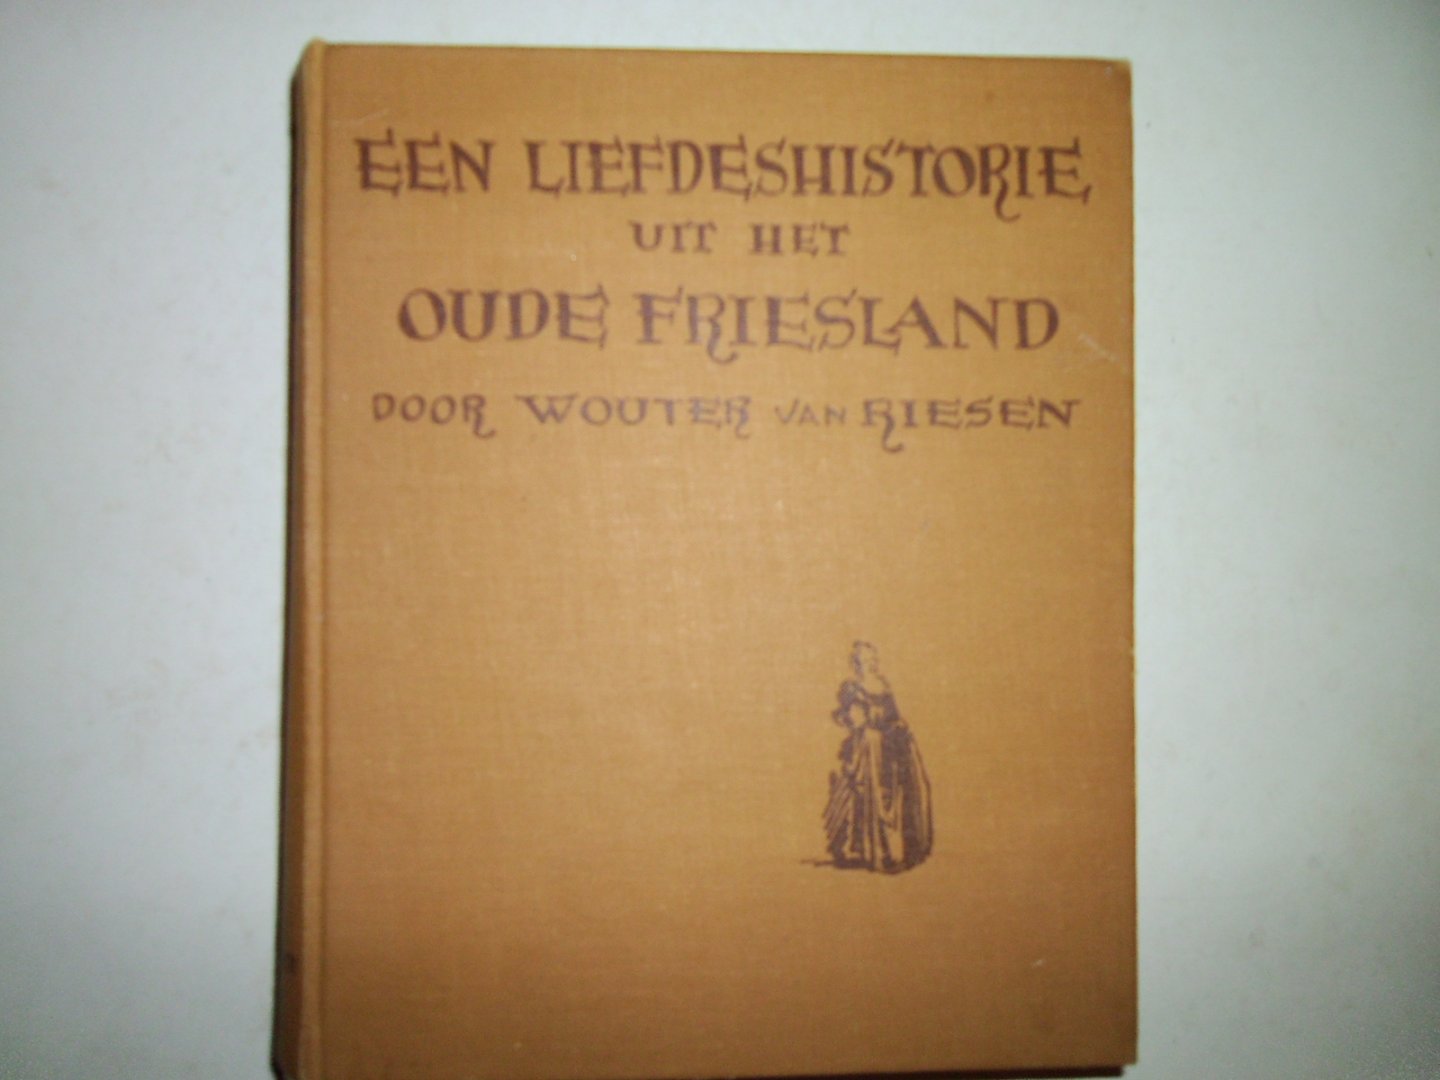 Riesen, Wouter van - Een liefdeshistorie uit het oude Friesland.